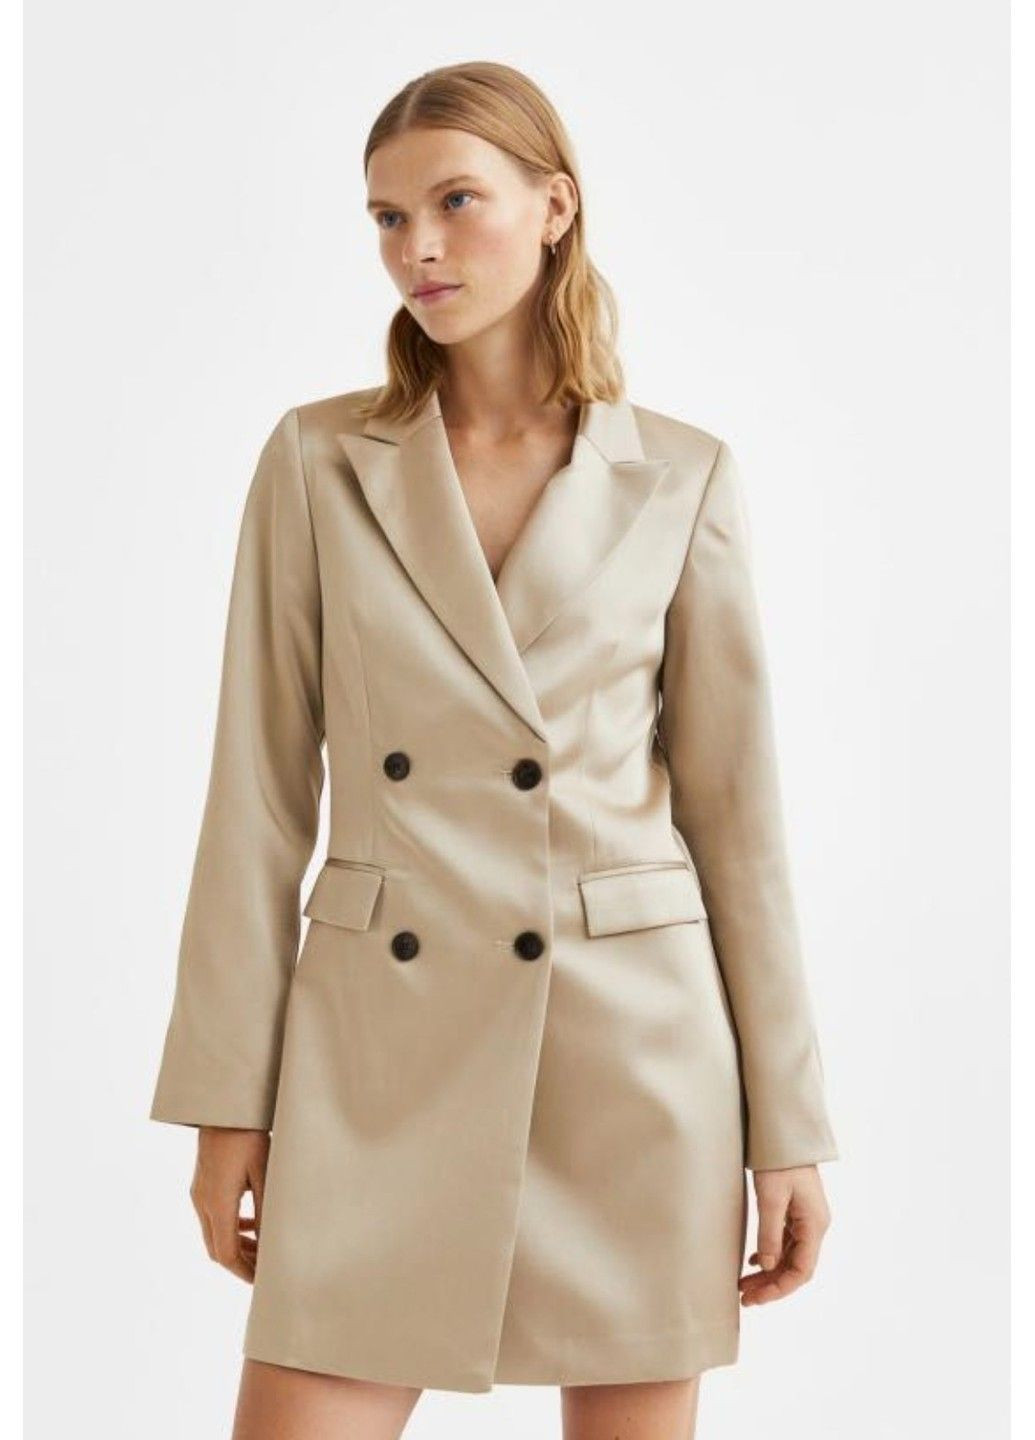 Светло-бежевое деловое женское атласное платье-пиджак н&м (56662) м светло-бежевое H&M